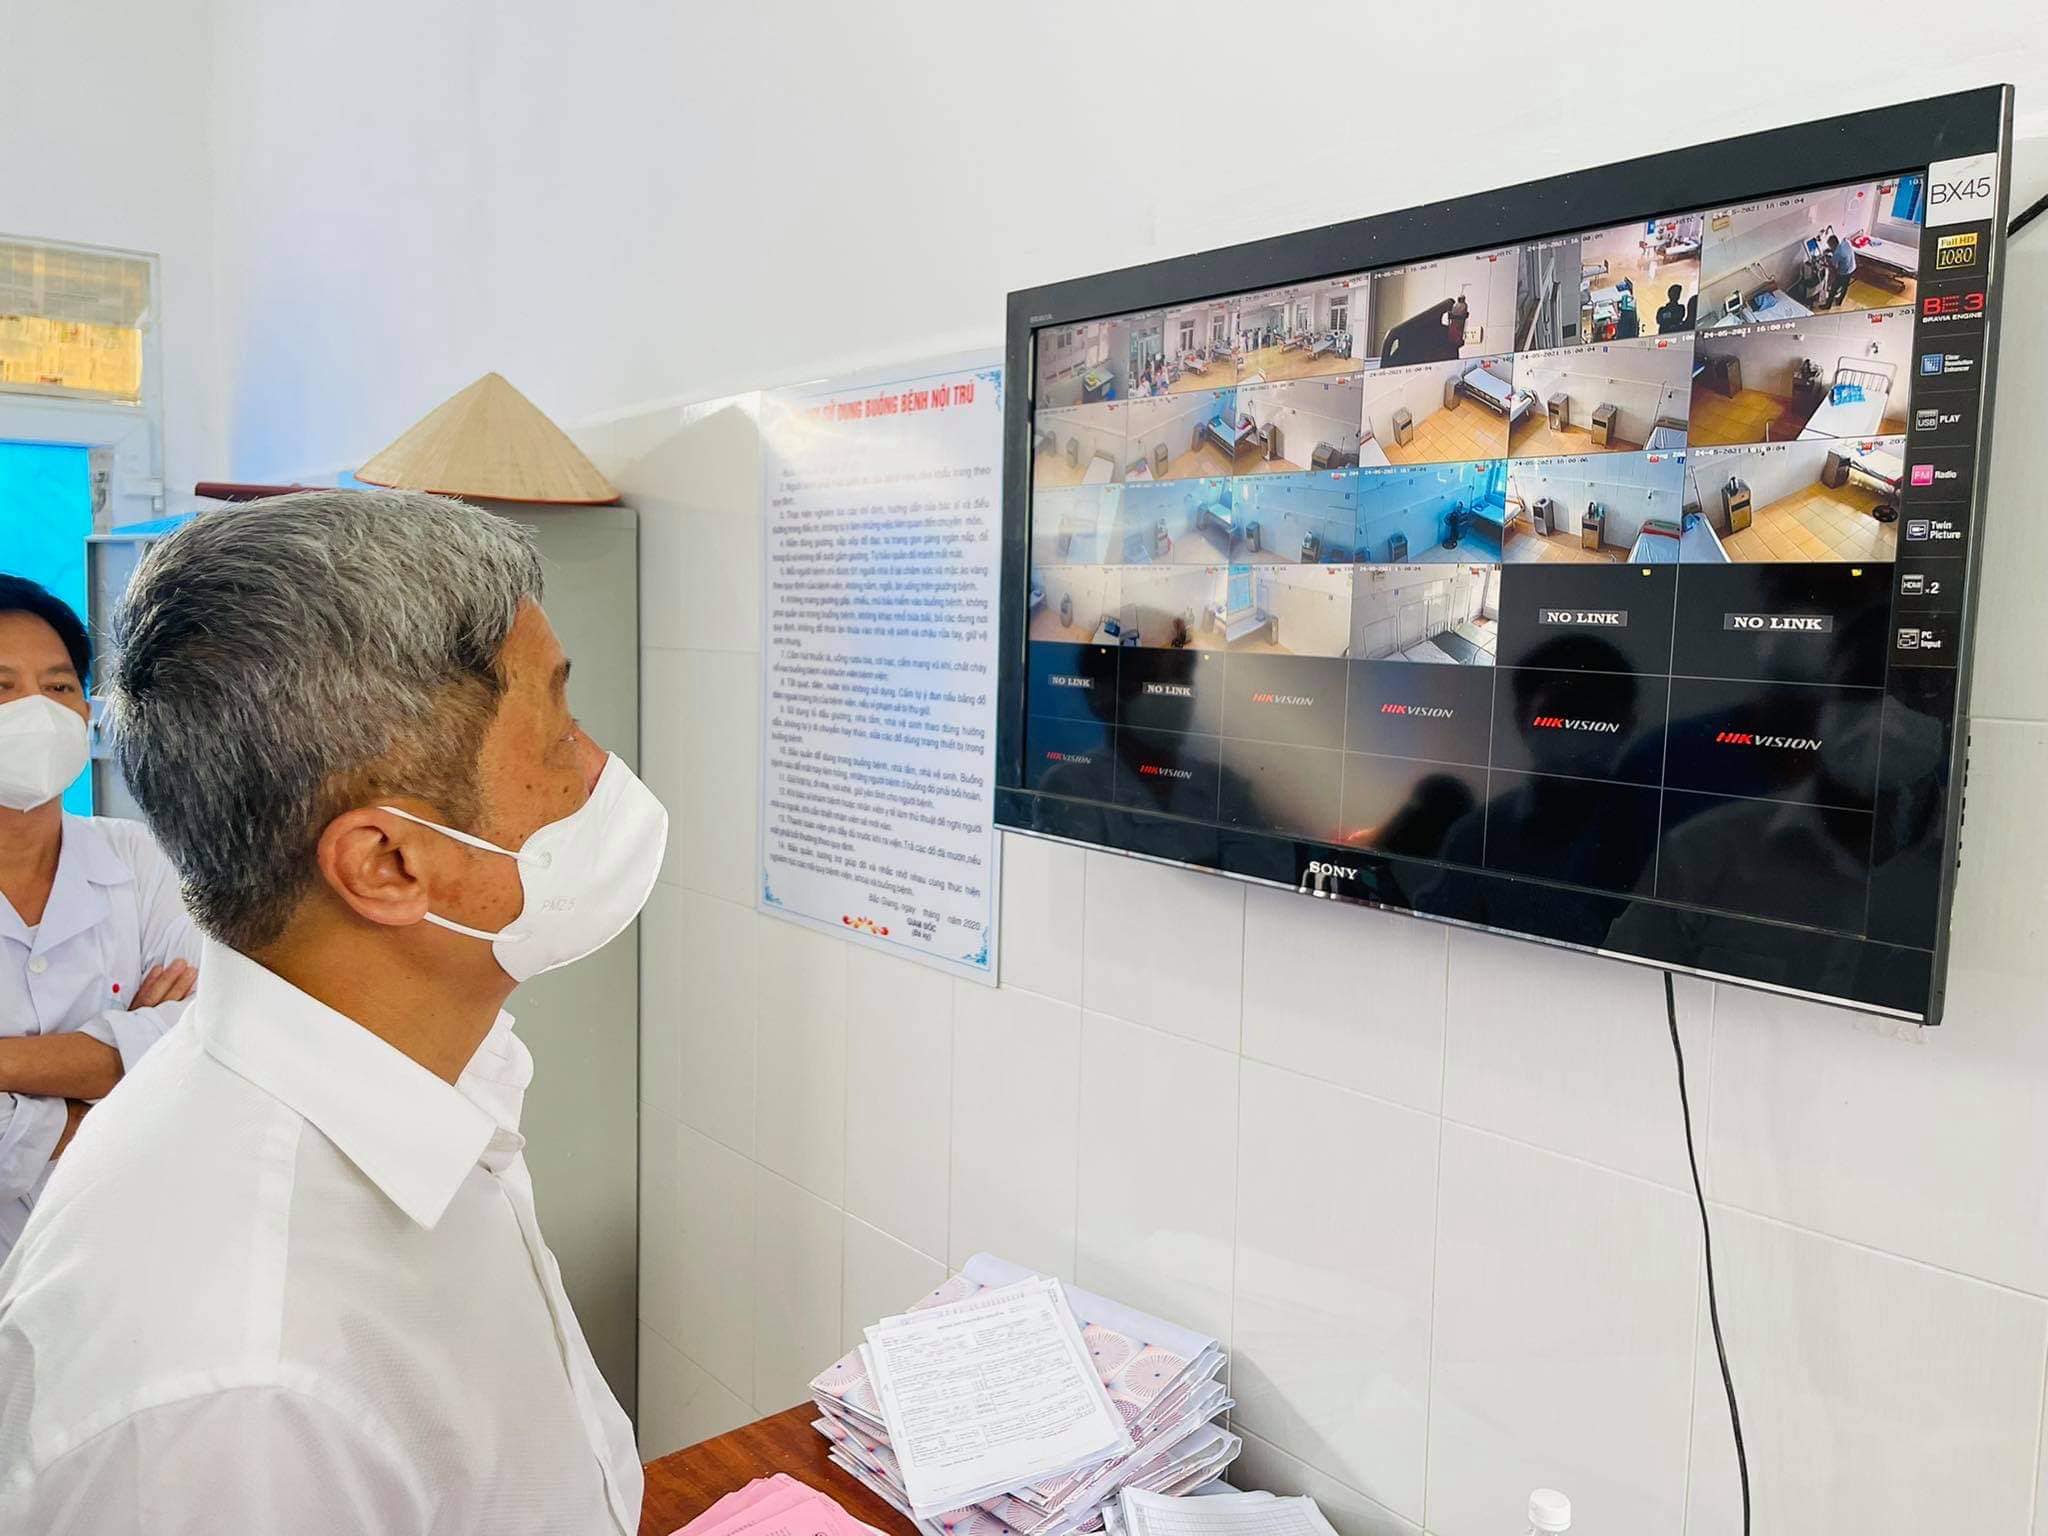 Thứ trưởng Nguyễn Trưởng Sơn kiểm tra đơn vị điều trị tích cực (ICU) mới được Bệnh viện Bạch Mai hỗ trợ thiết lập tại Bệnh viện Phổi tỉnh Bắc Giang.